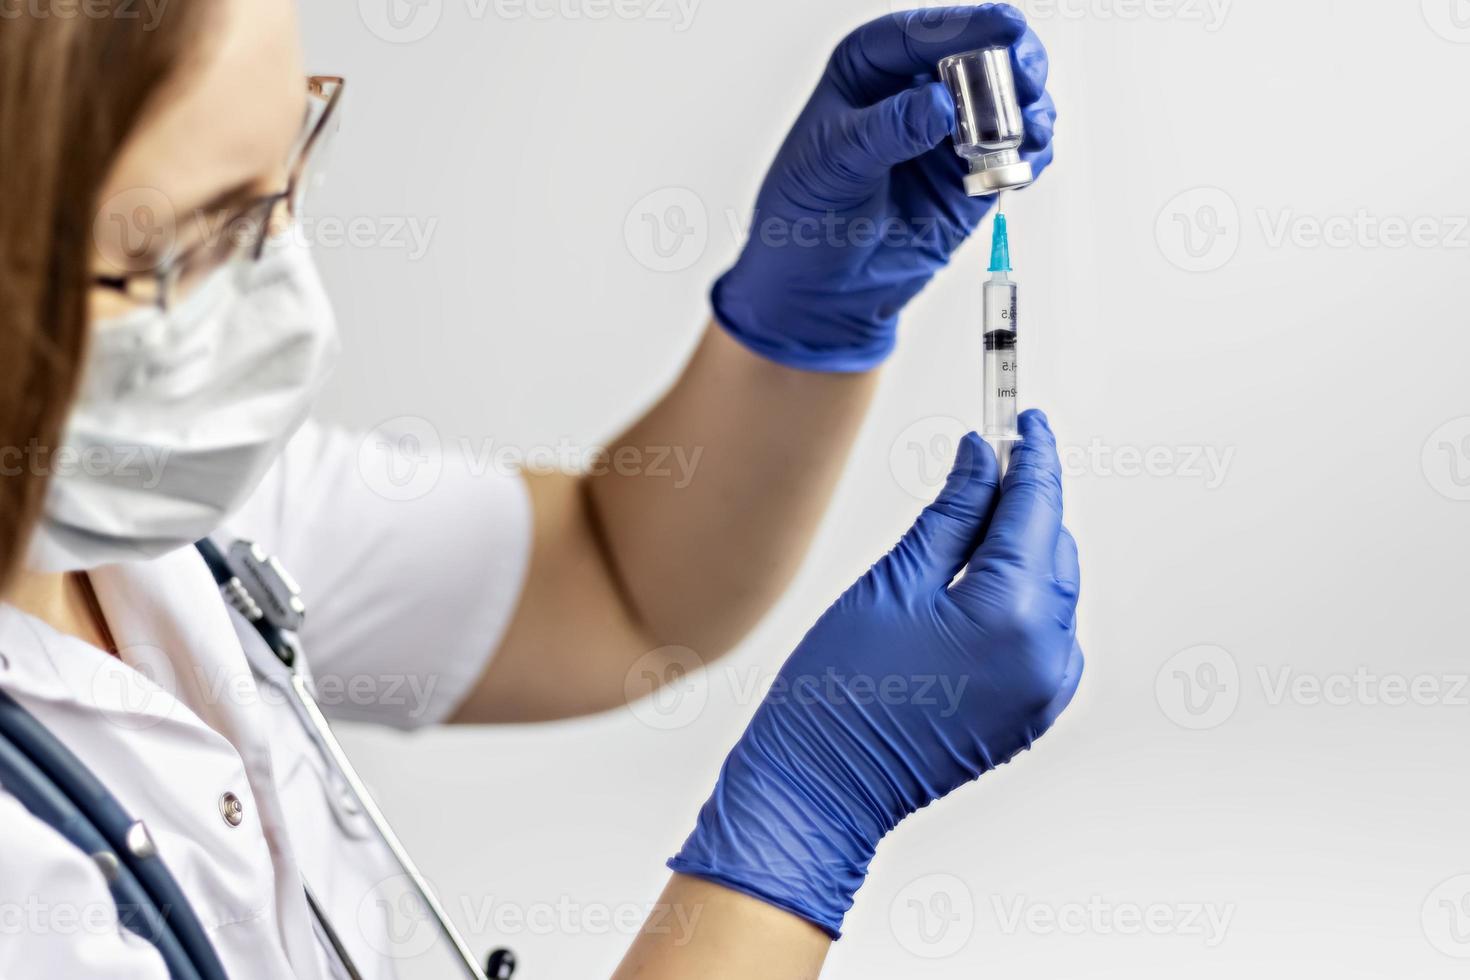 Eine Ärztin, die eine medizinische Maske trägt, zieht den Coronavirus-Impfstoff in der Klinik in eine Spritze. Das Konzept der Impfung, Immunisierung, Prävention gegen Covid-19. foto